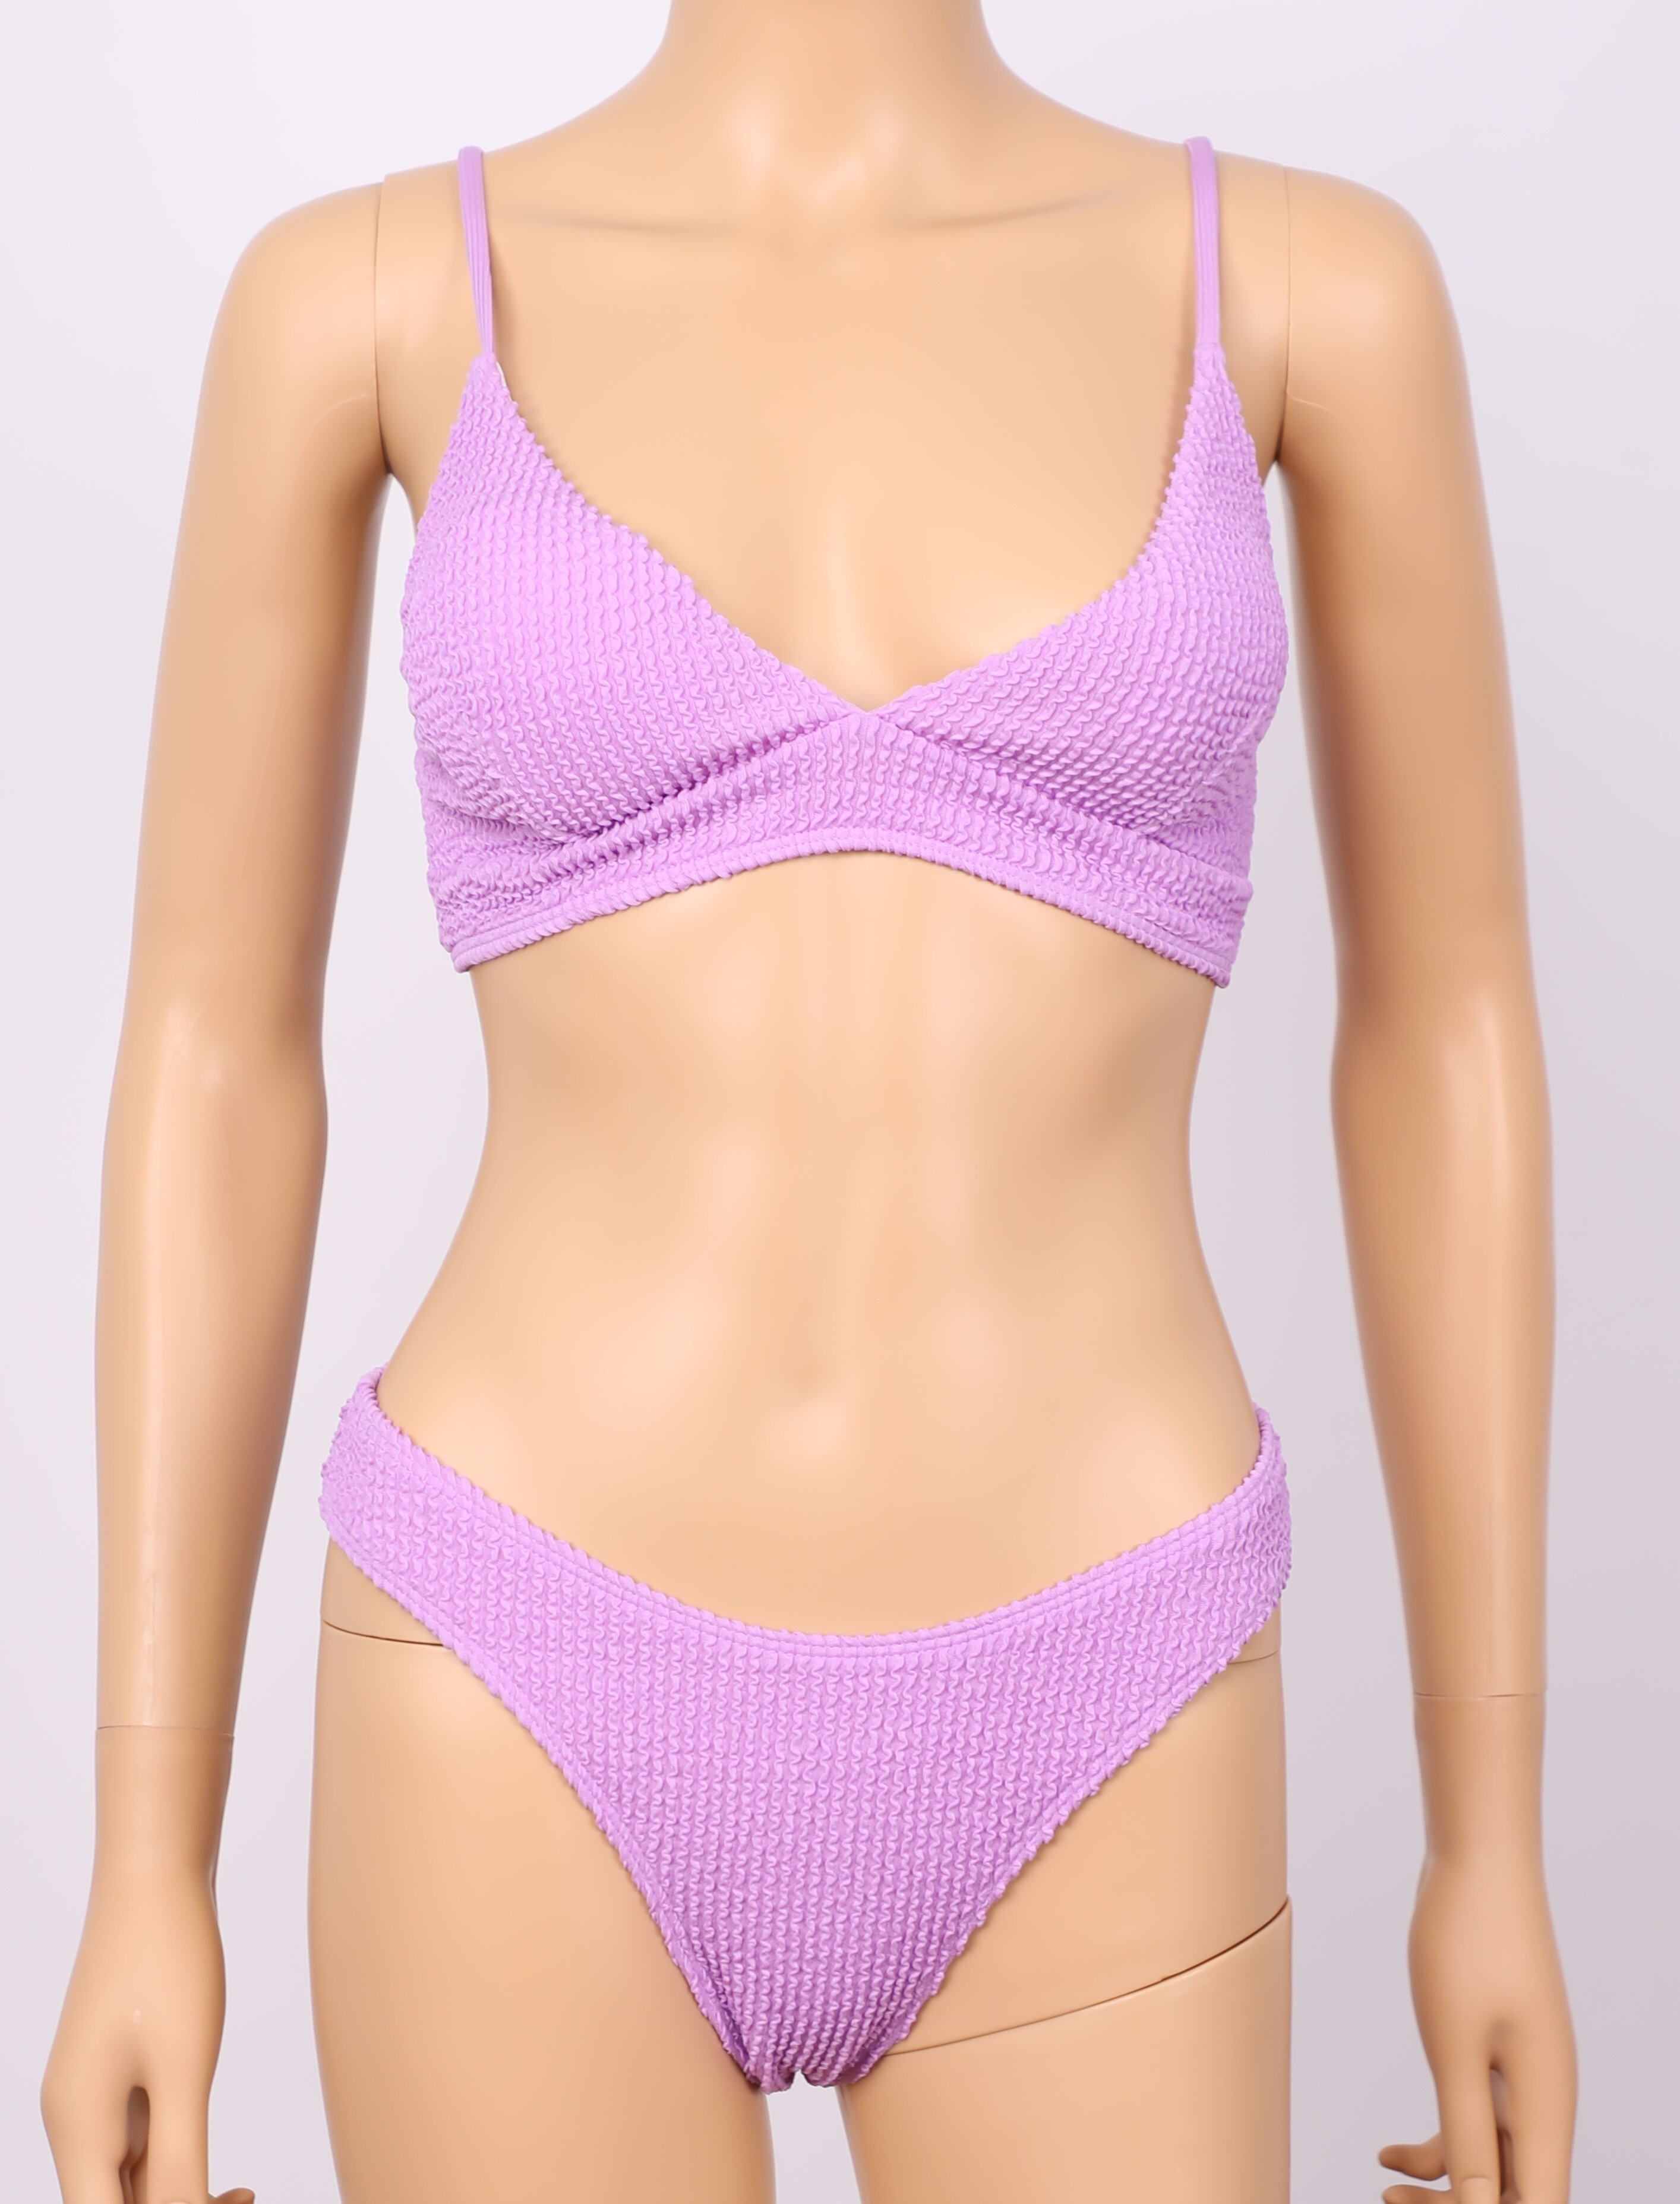 Get Romantic Purple Bikini For You